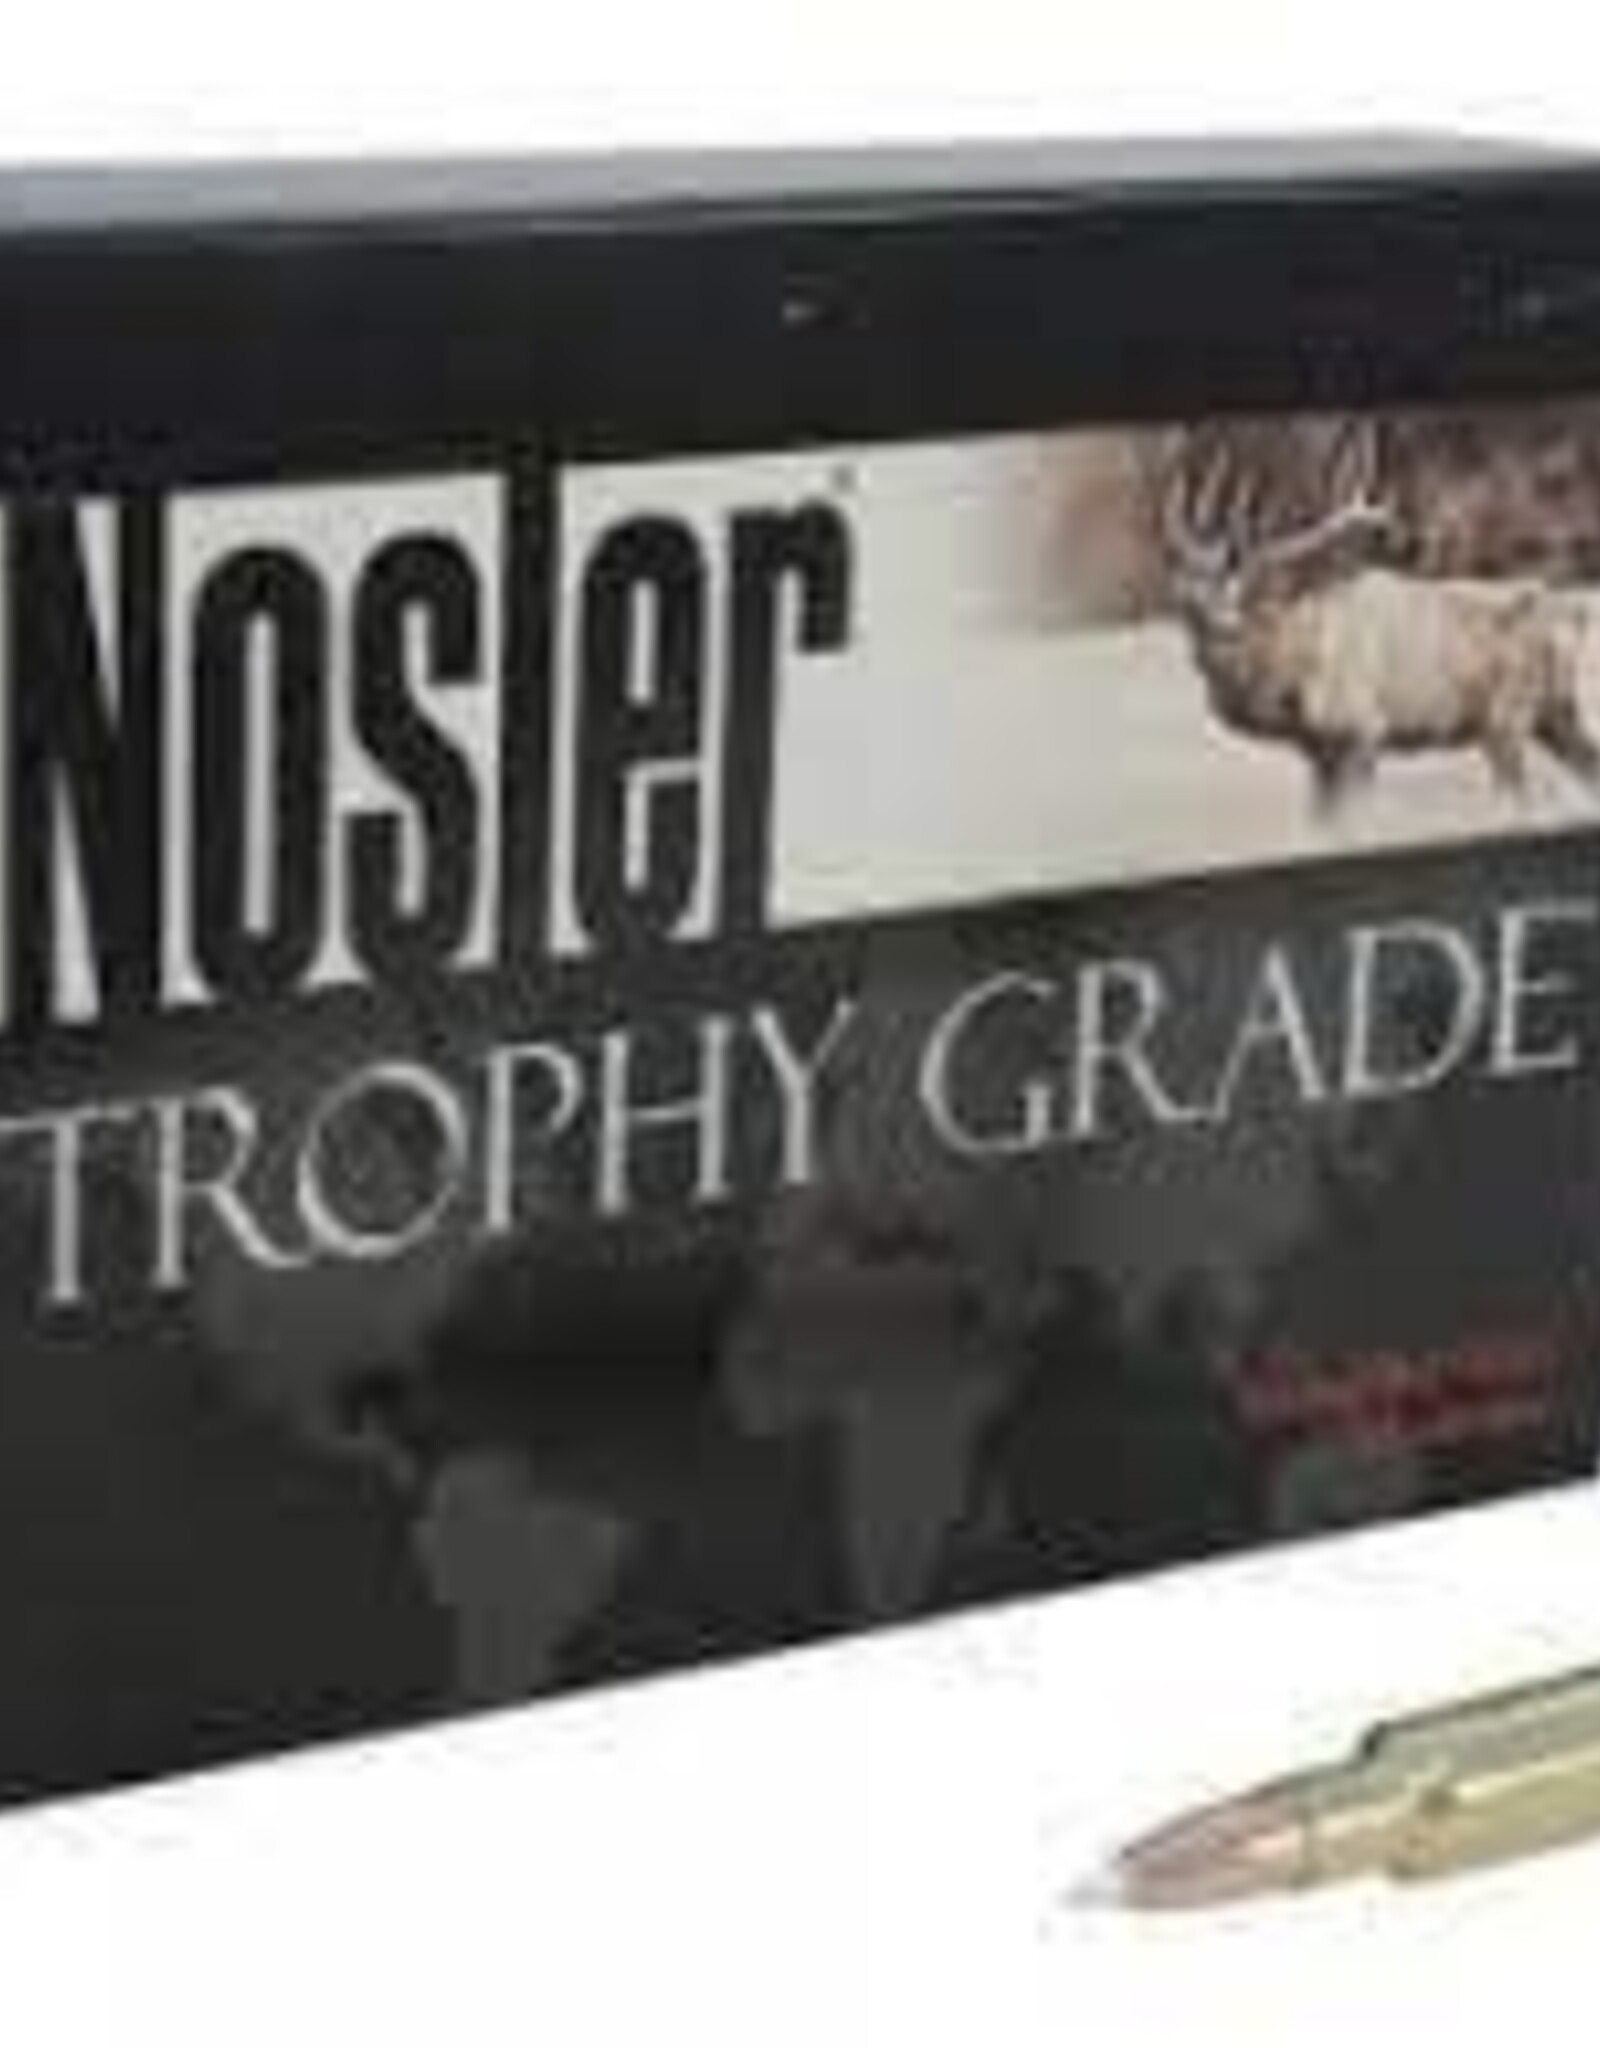 Nosler Trophy Grade Ammunition